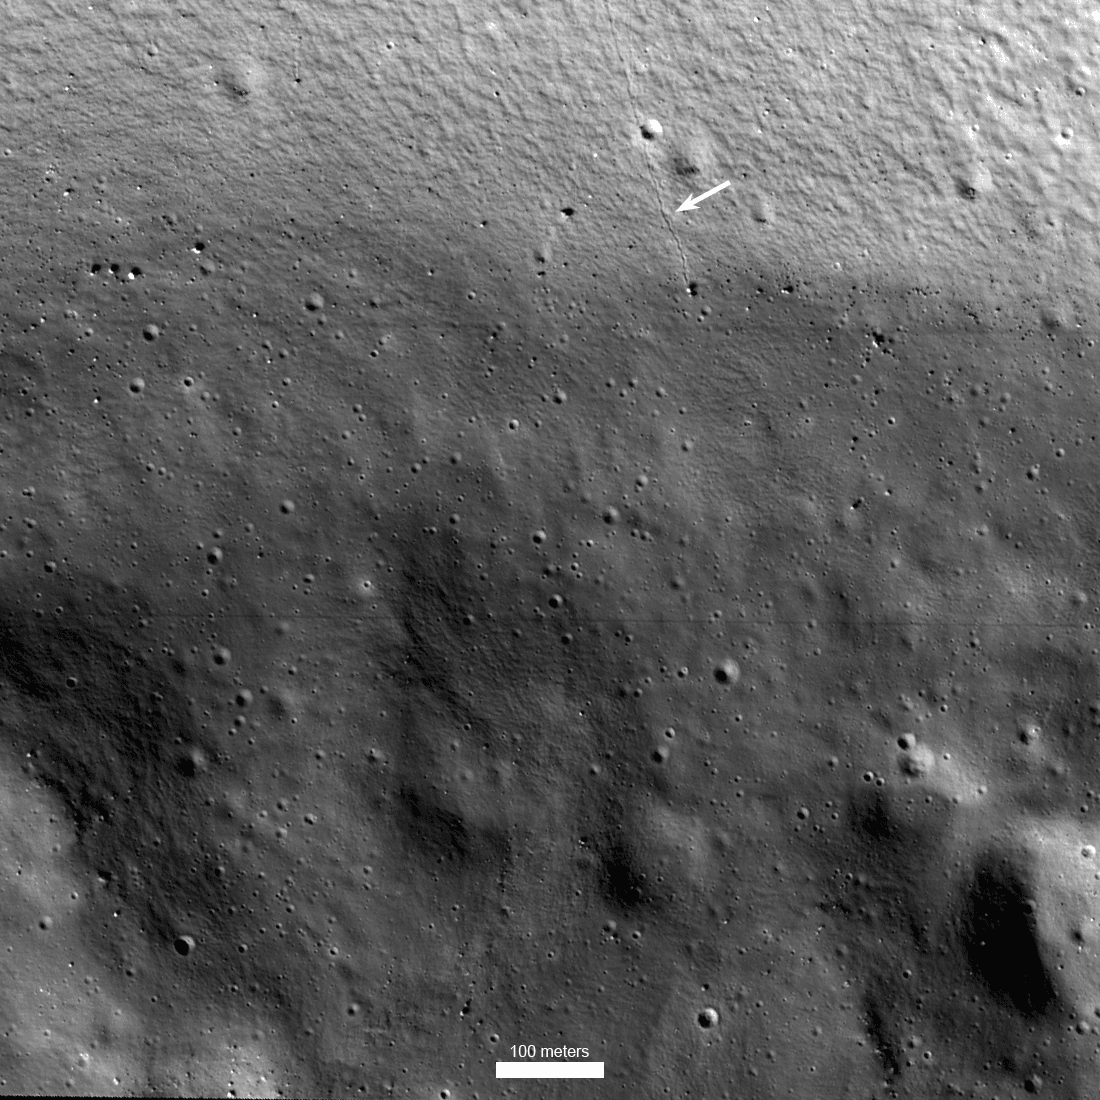 جزء مقرّب من سطح القمر يظهر تضاريس صغيرة نسبيّاً بسطوعات متدرّجة ومتباينة، مع وجود خطّ هو أثر تدحرج جلمود صخري